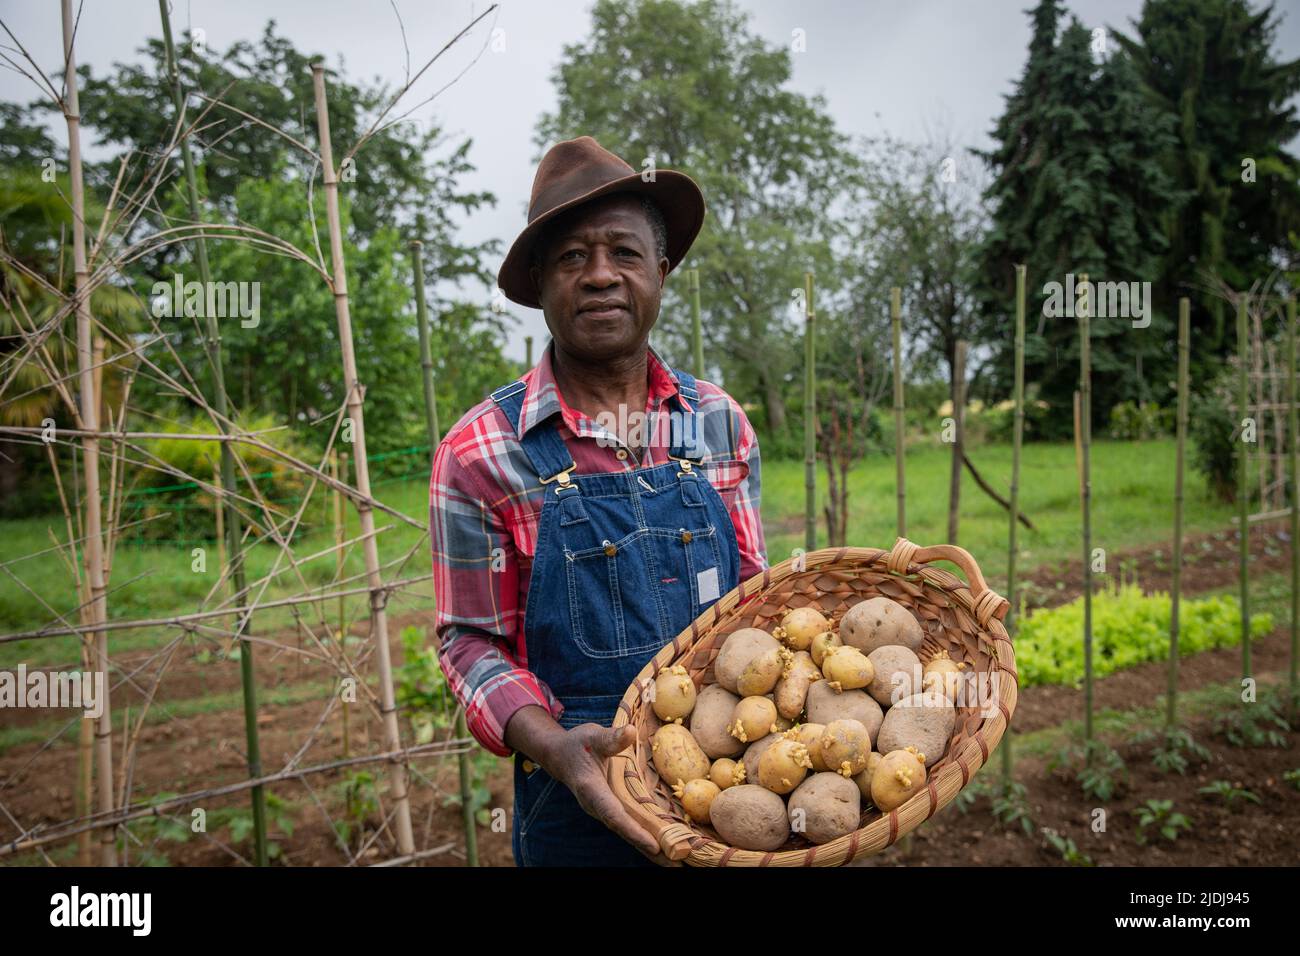 Un agricoltore nei campi con un cestino di patate appena raccolte, concetto di raccolto nei campi Foto Stock